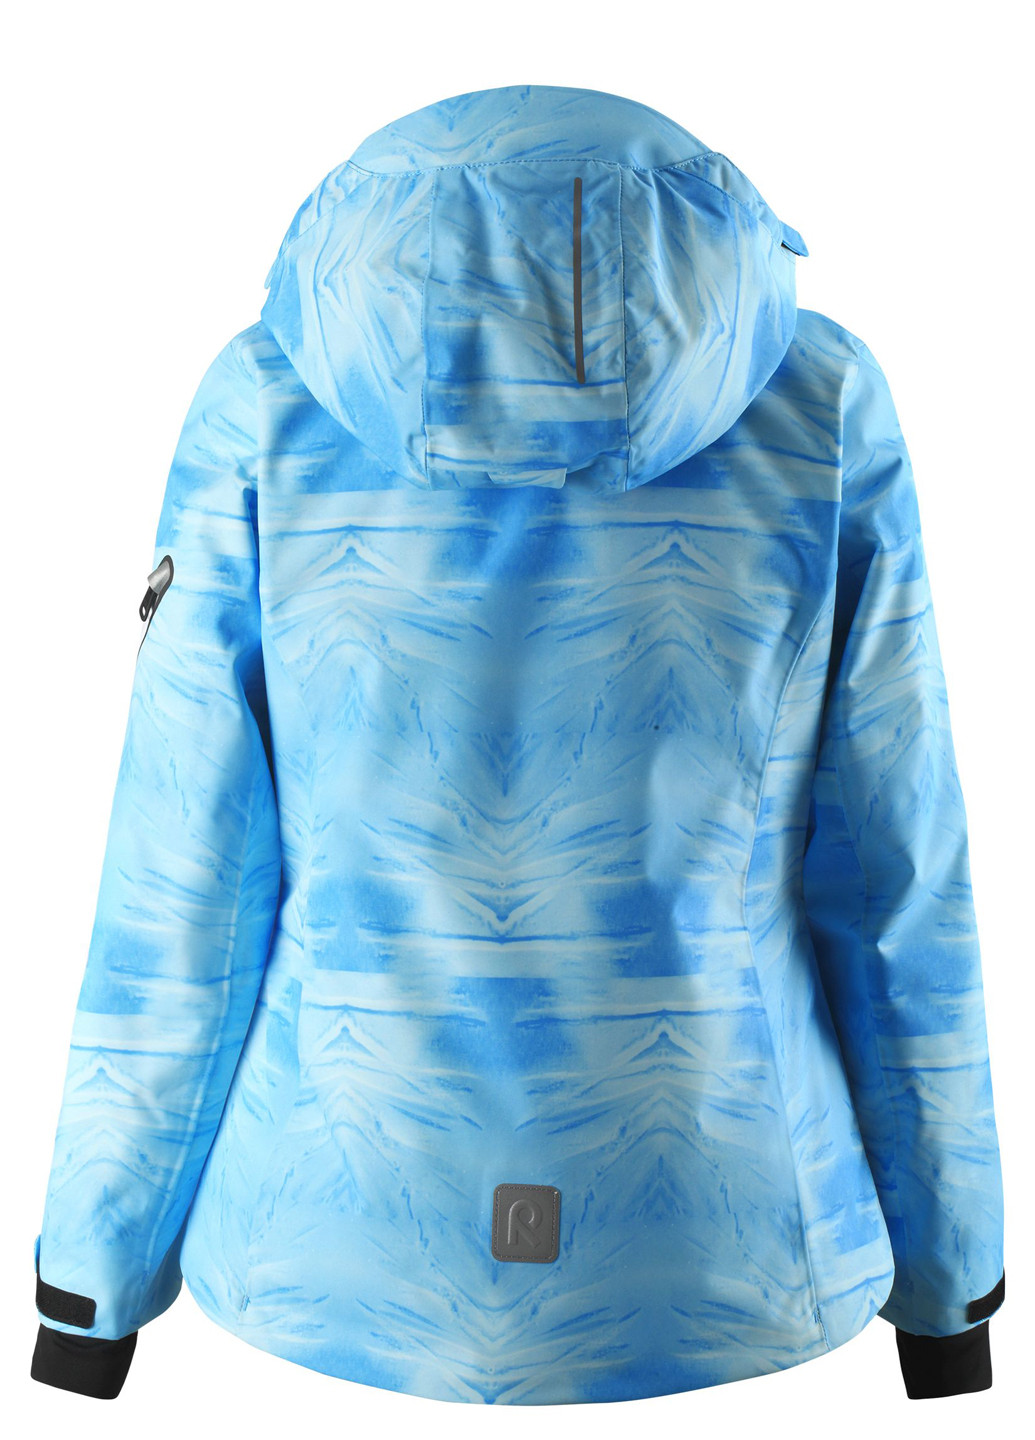 Синяя зимняя куртка Reima